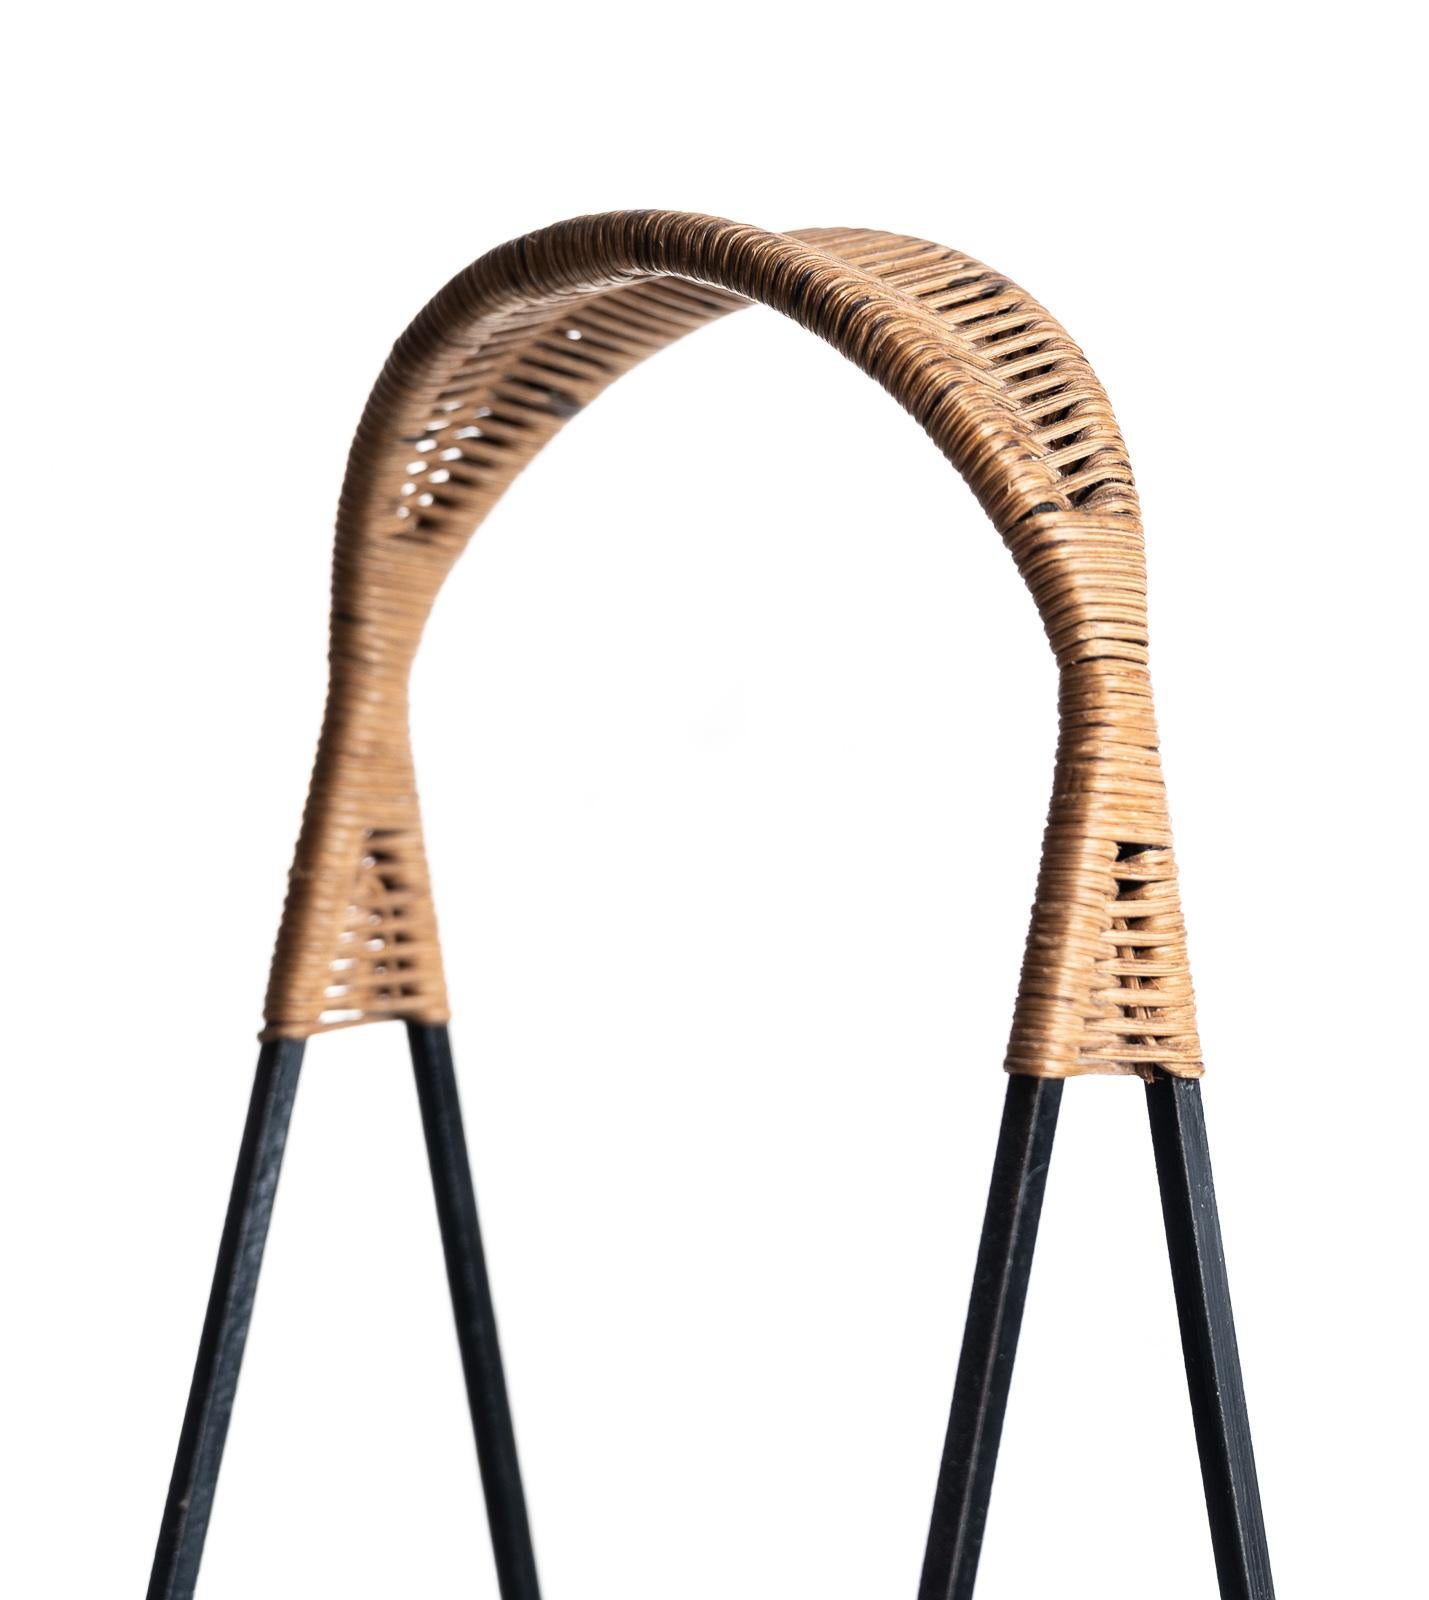 Rare Metal Basket with Wicker Handles by Mathieu Matégot 1